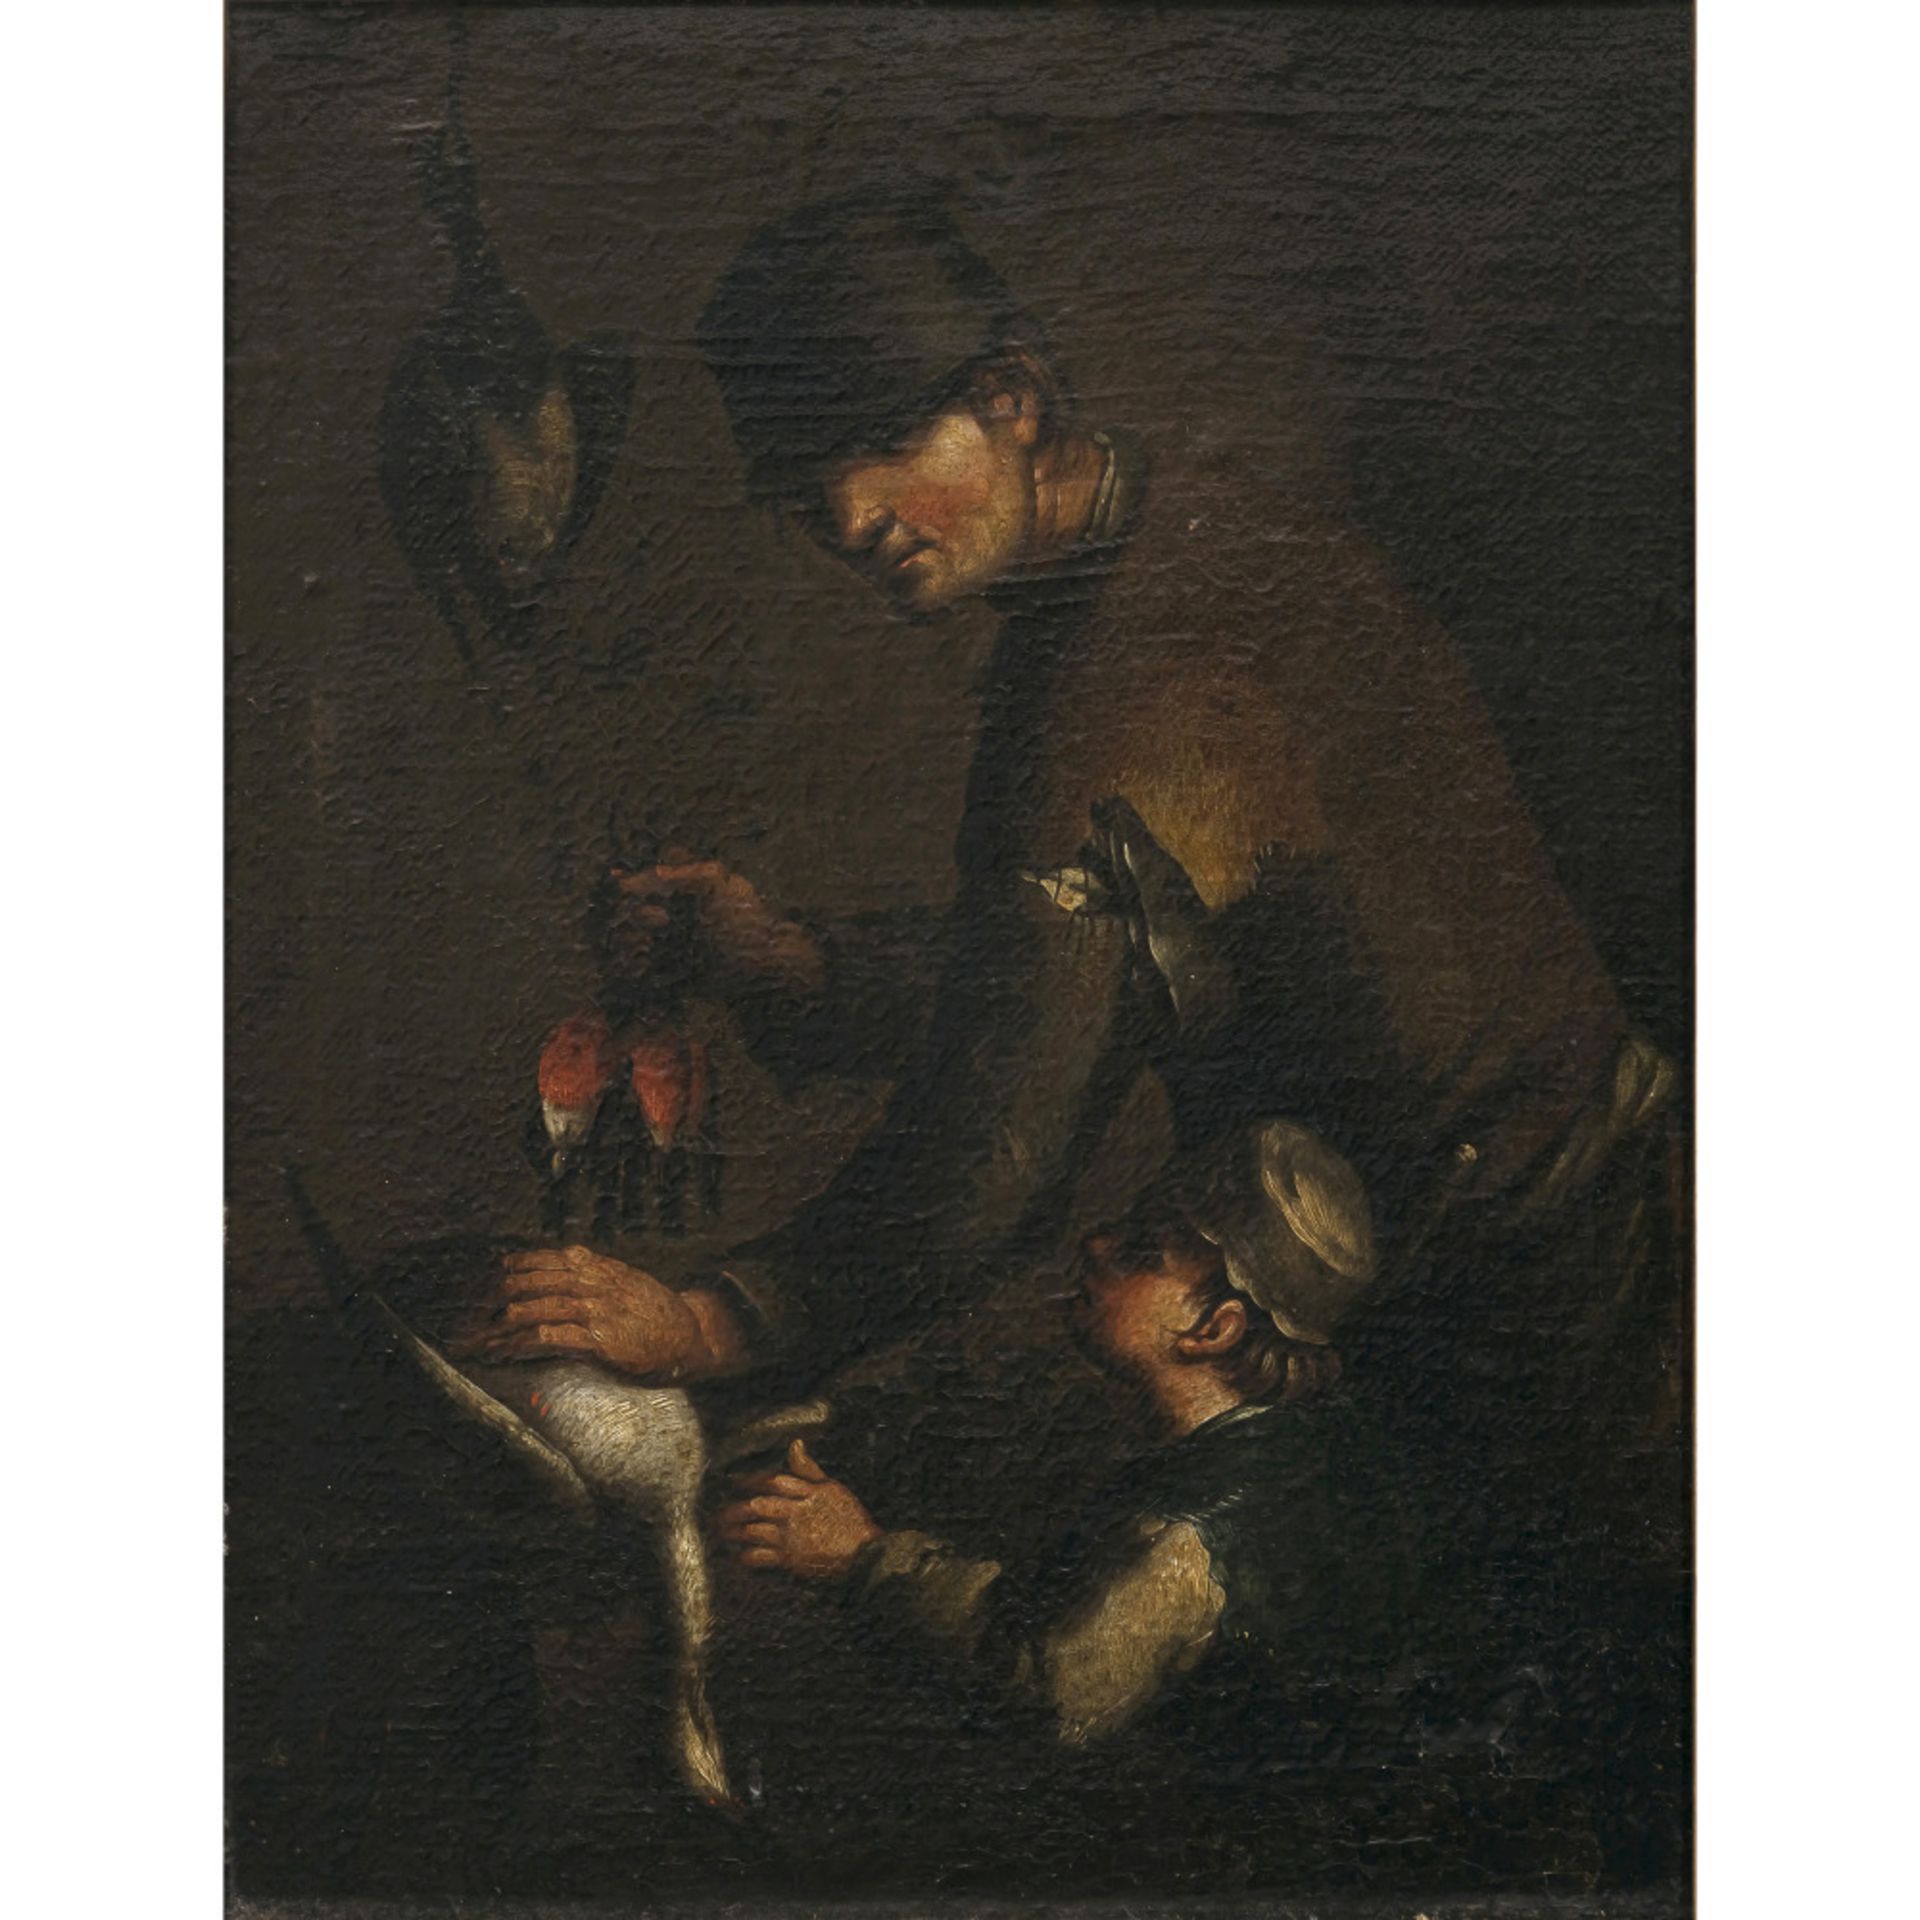 Niederlande (Nicolaes Maes, 1634 Dordrecht - 1693 Amsterdam, Umkreis?) 17th century - The bird deale